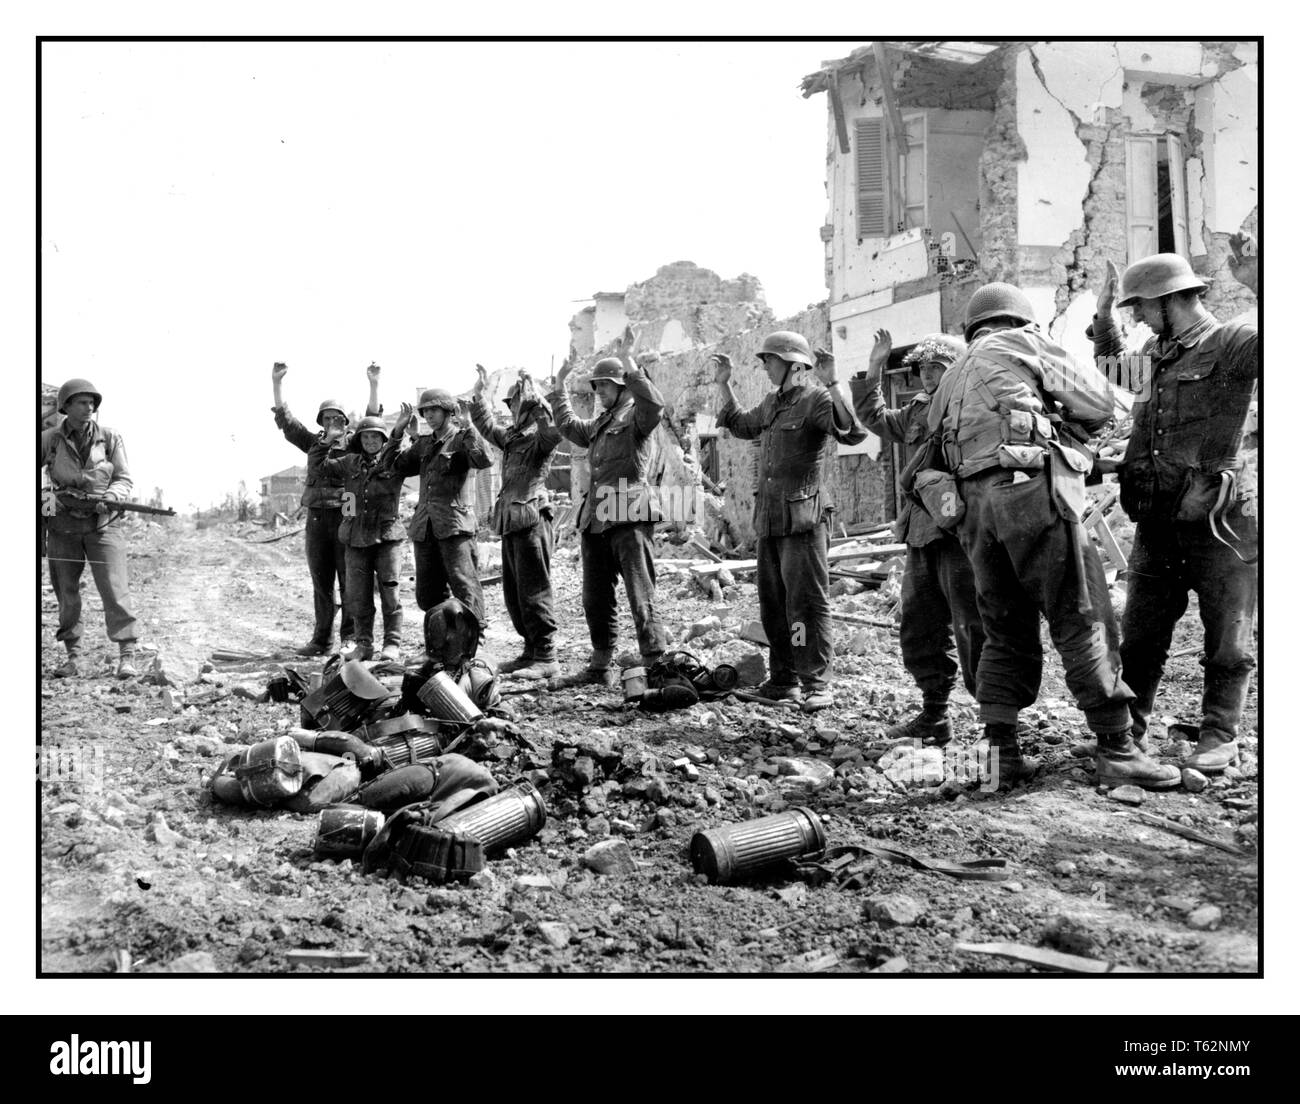 WW2 Propaganda immagine di truppe tedesche catturate cedendo all'esercito americano ad Anzio Italia. Le truppe tedesche cedono alle forze americane la battaglia di Anzio fu una battaglia della Campagna Italiana della seconda Guerra Mondiale che si svolse dal 22 gennaio 1944 al 5 giugno 1944 la seconda Guerra Mondiale Foto Stock